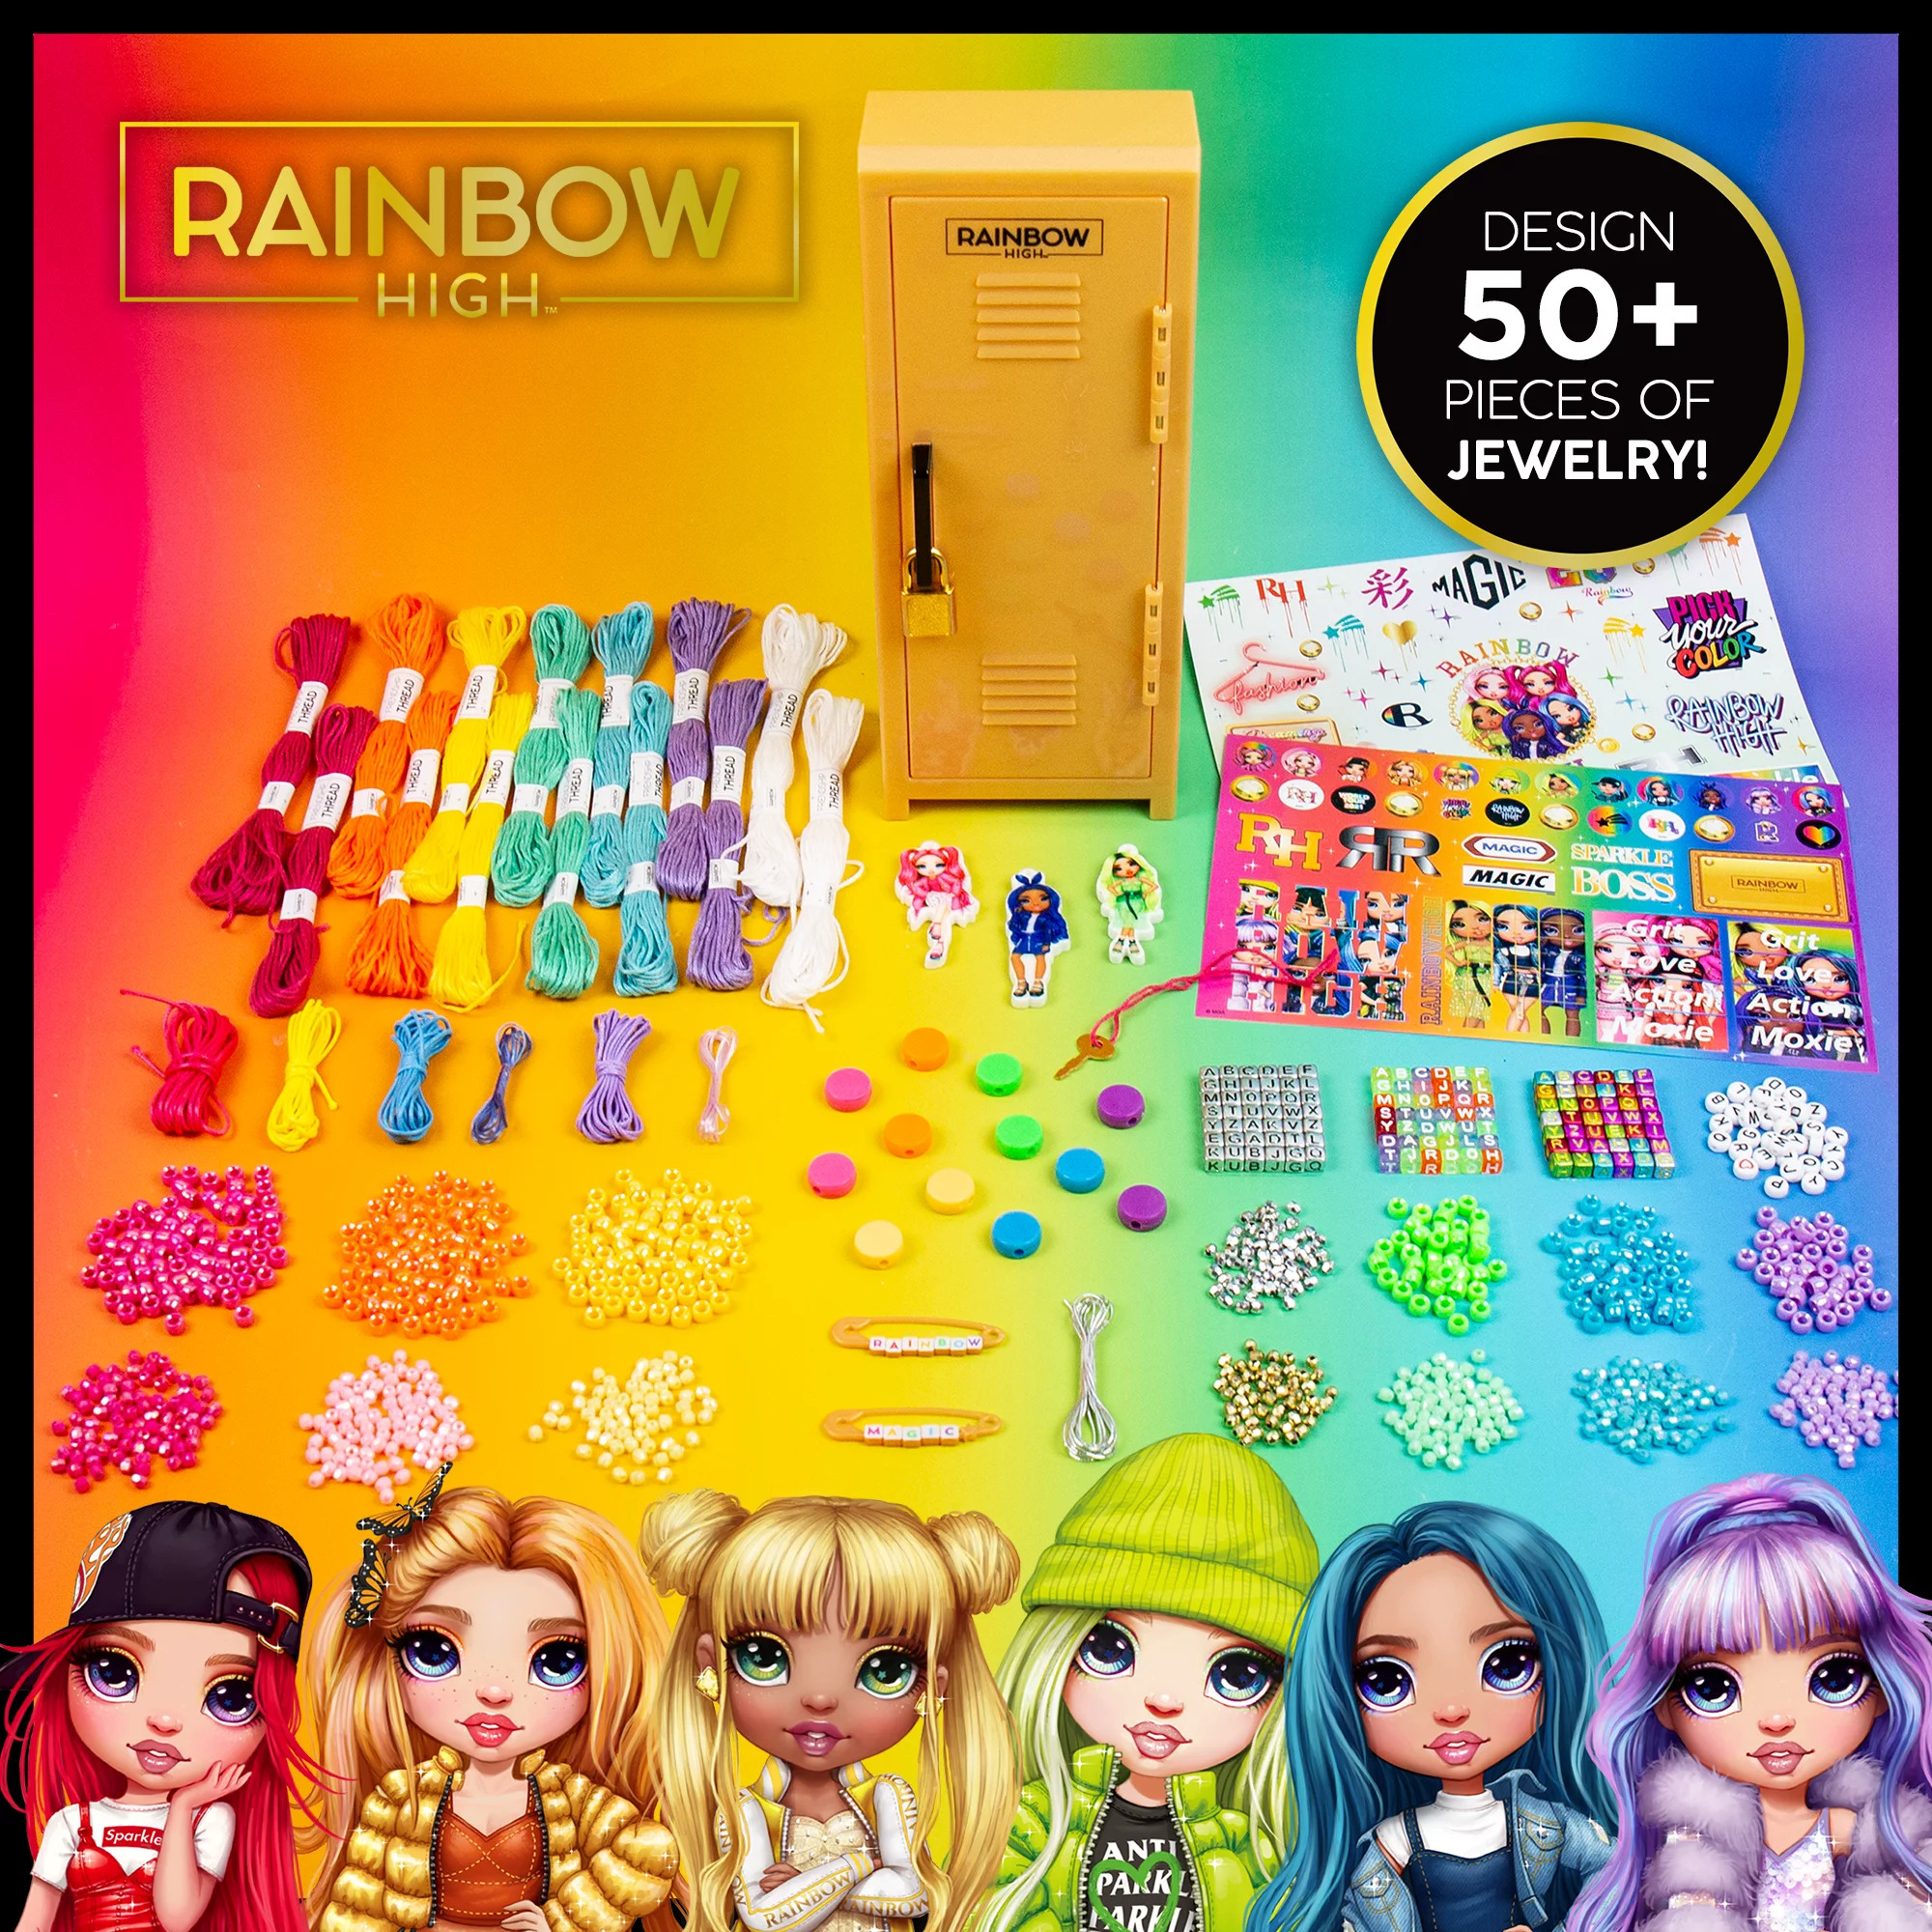 1400-Piece Rainbow High Girls' Fashion Jewelry Studio Bracelet-Making Set w/ Bracelet Locker ((Maker 50+ Pieces of Jewelry)) $8.62  + Free S&H w/ Walmart+ or $35+